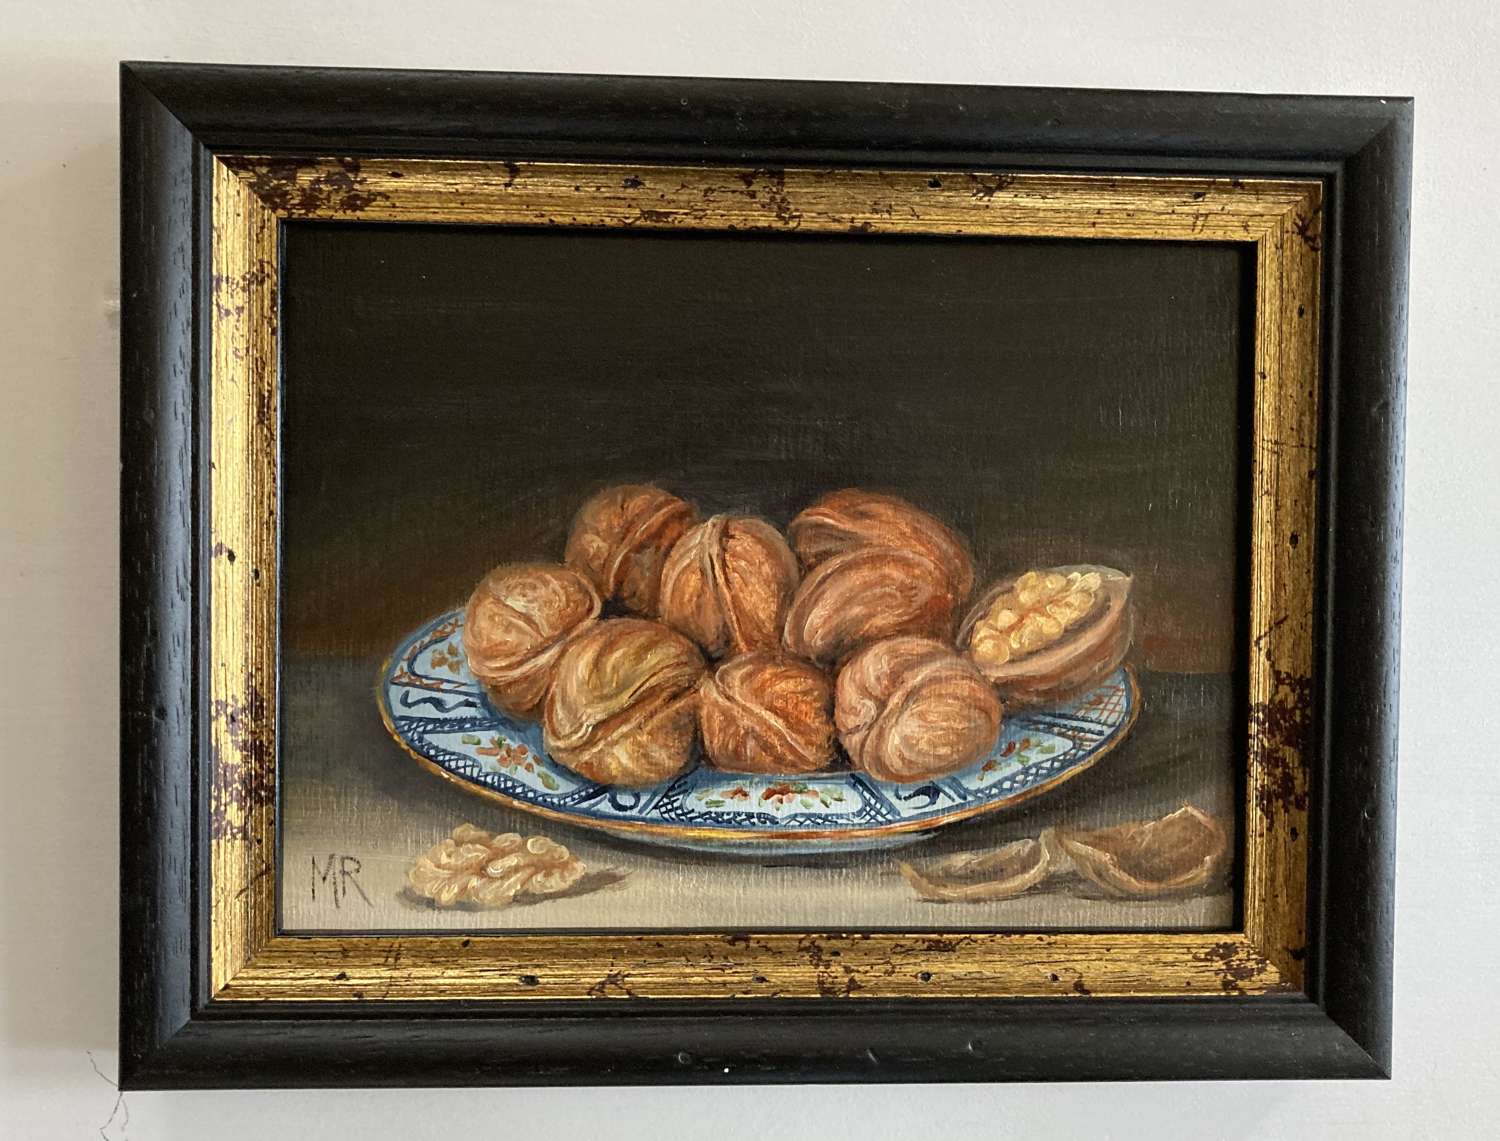 Plate of walnuts